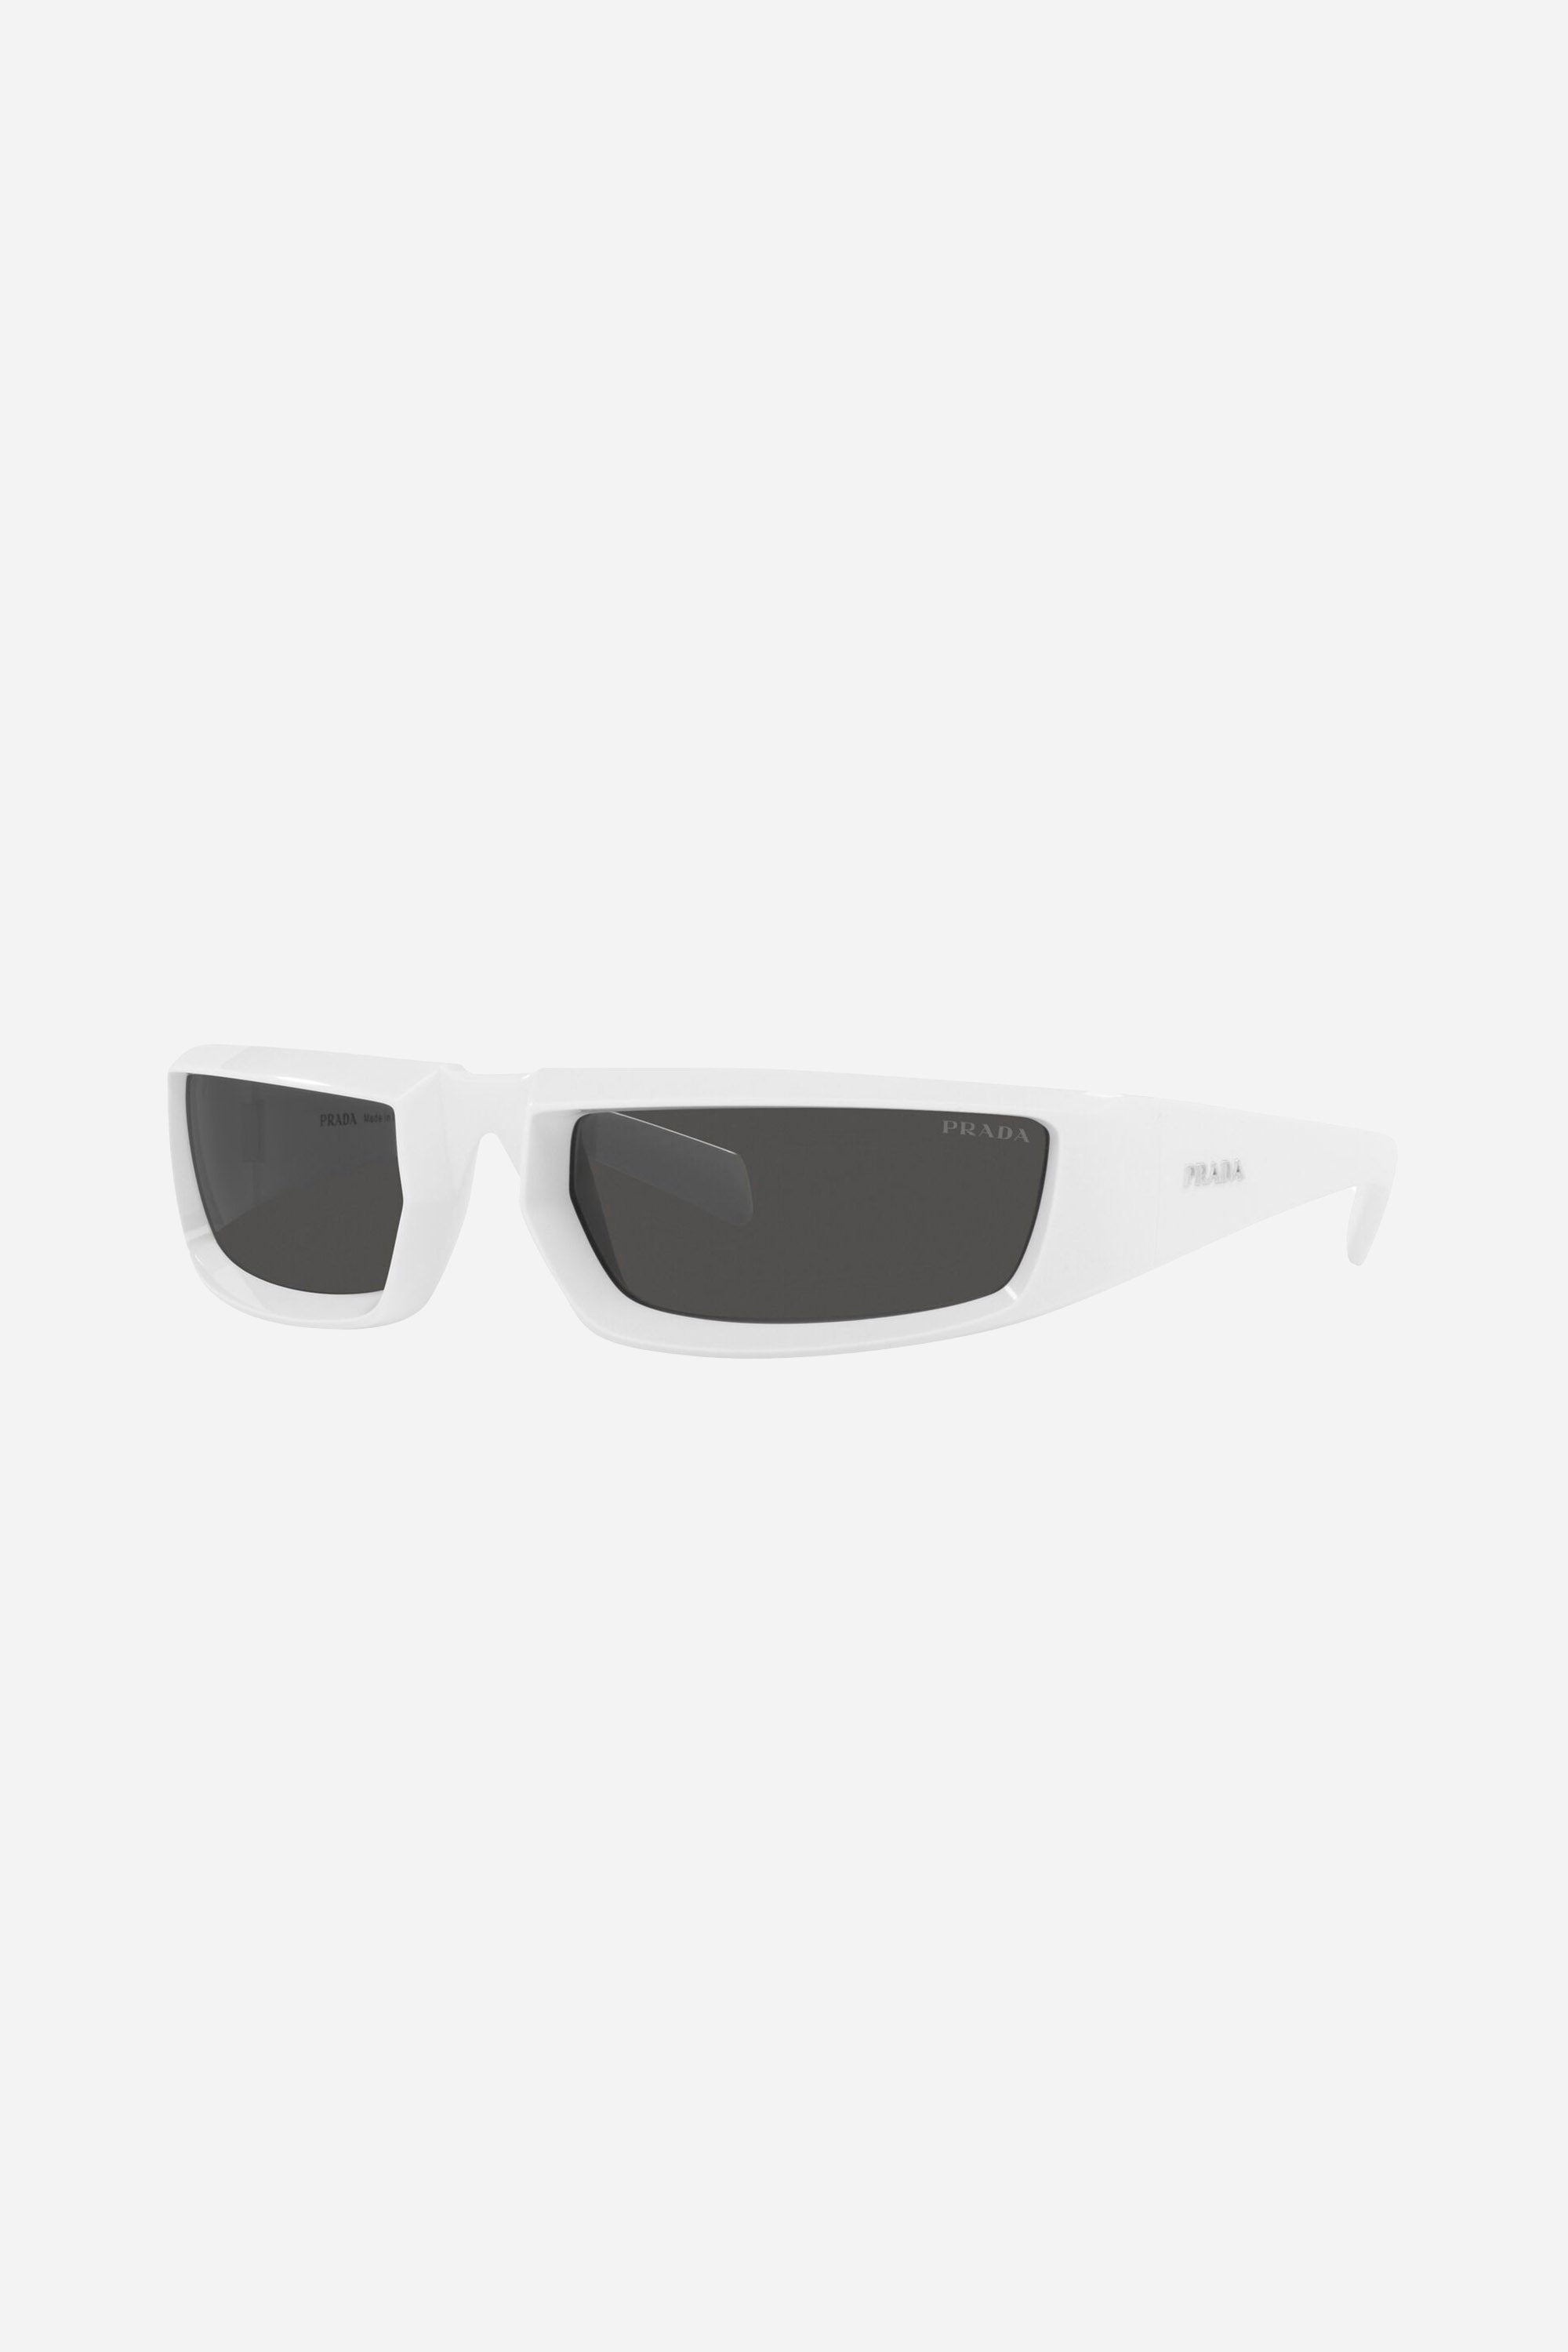 Prada runway wrap around white sunglasses - Eyewear Club